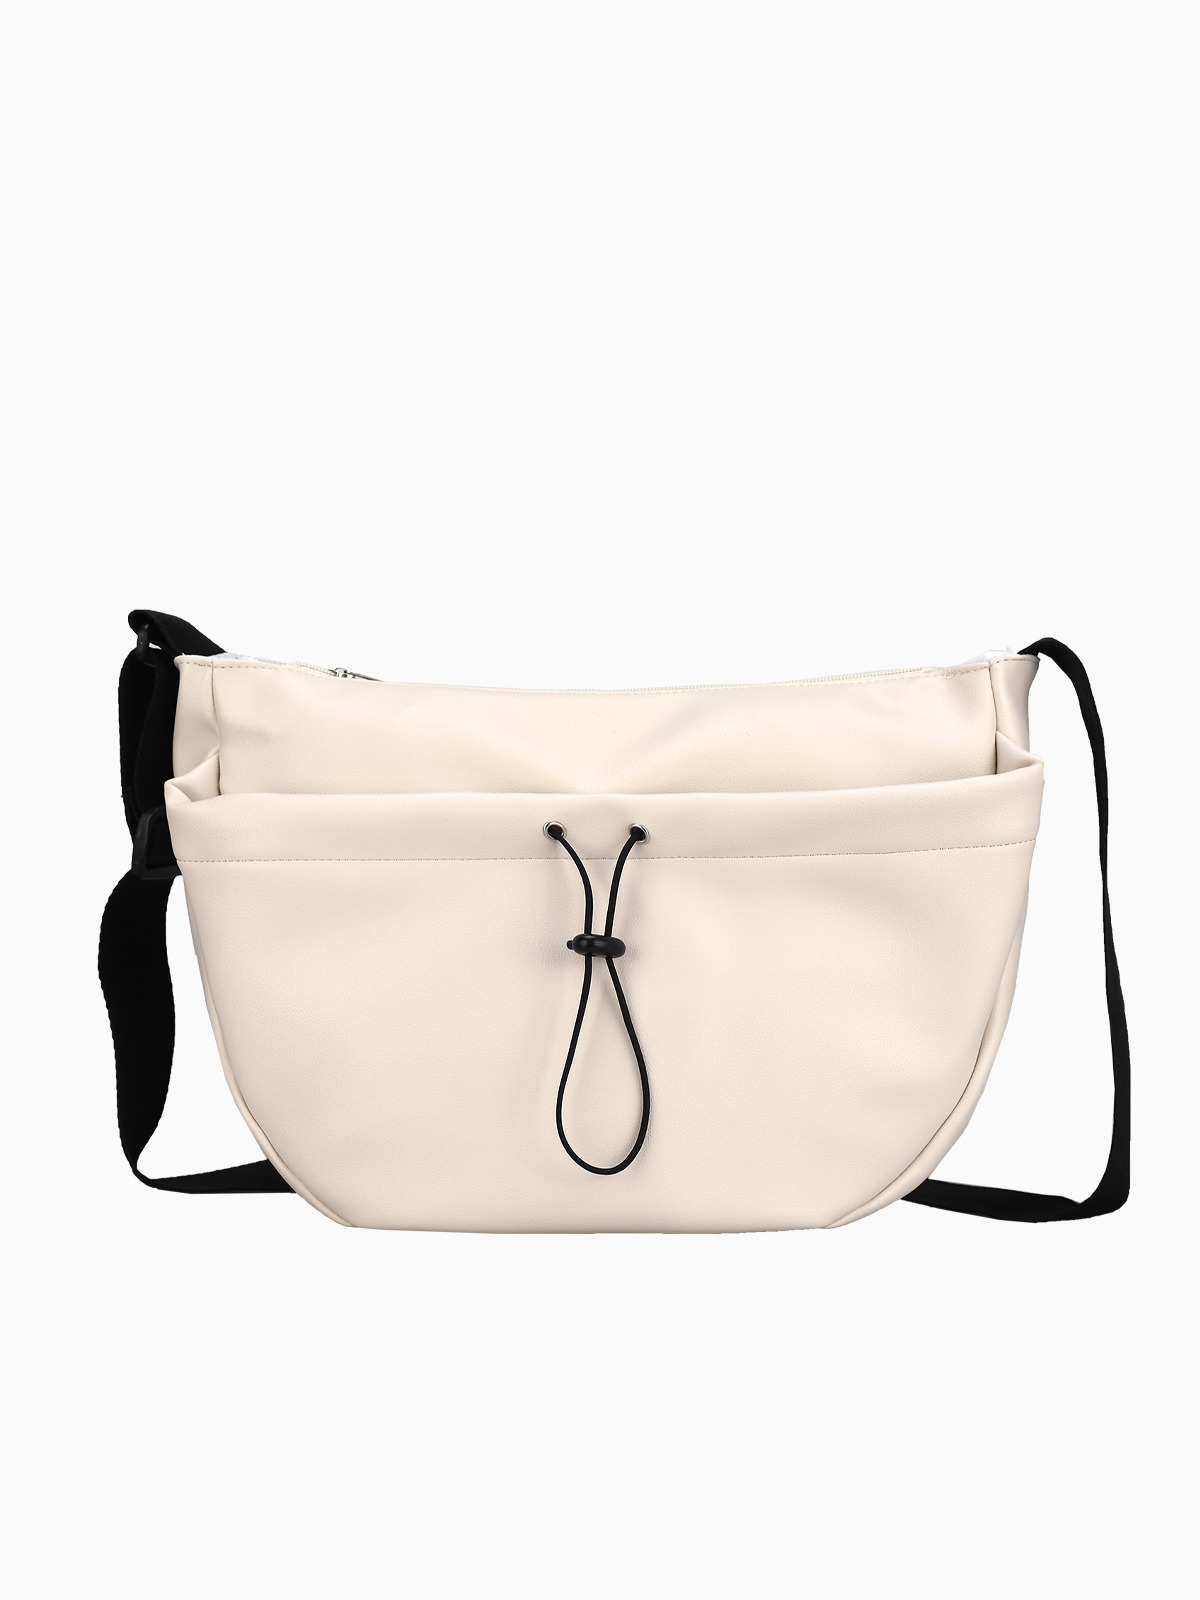 여성 크로스백 LSA031 데일리 숄더백 캐주얼 가방